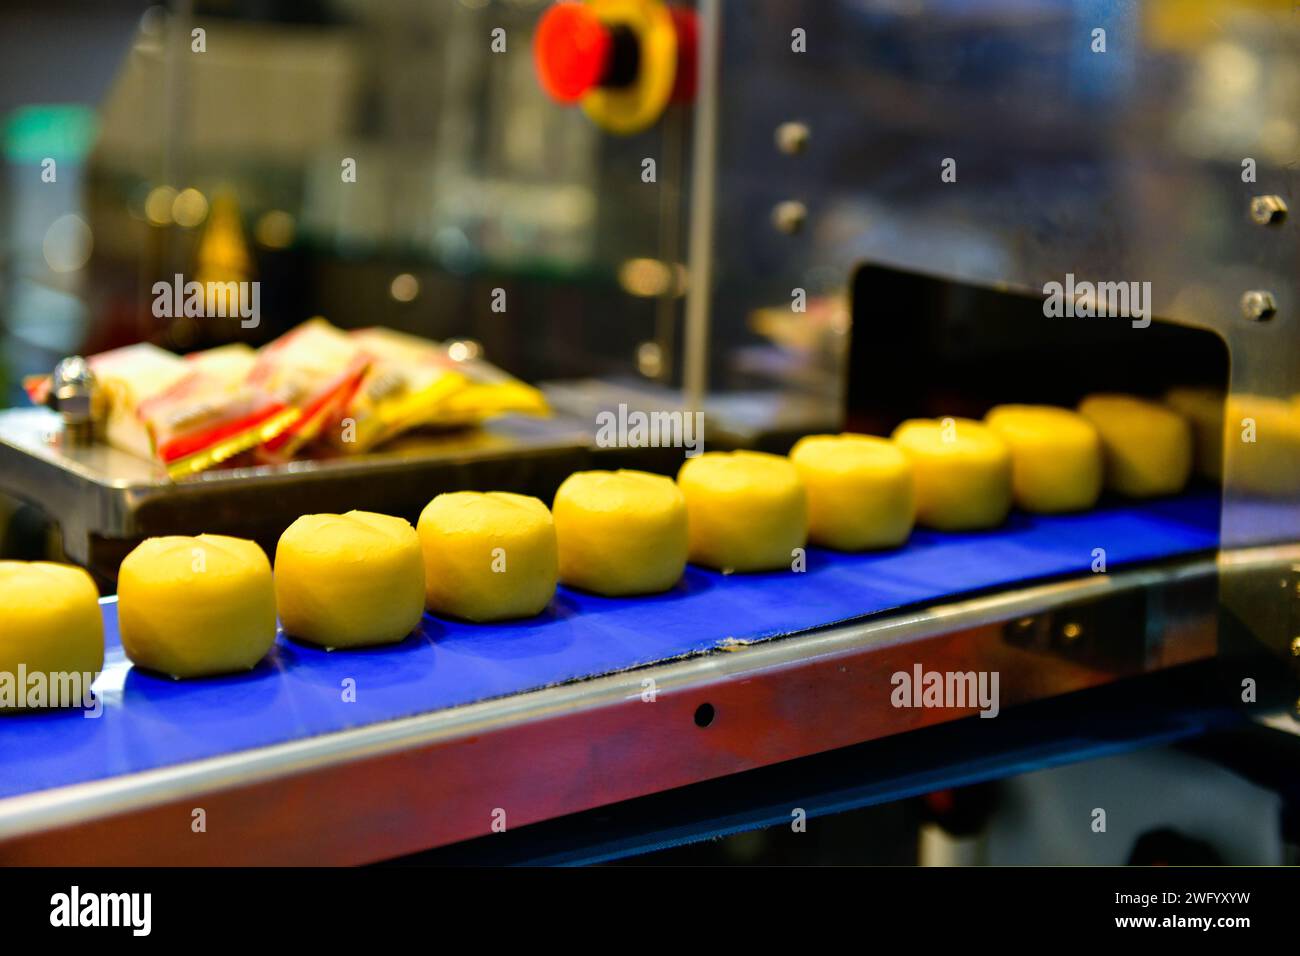 Linea di produzione automatica di snacks dorati su macchine per nastri trasportatori in fabbrica, produzione alimentare industriale. Foto Stock